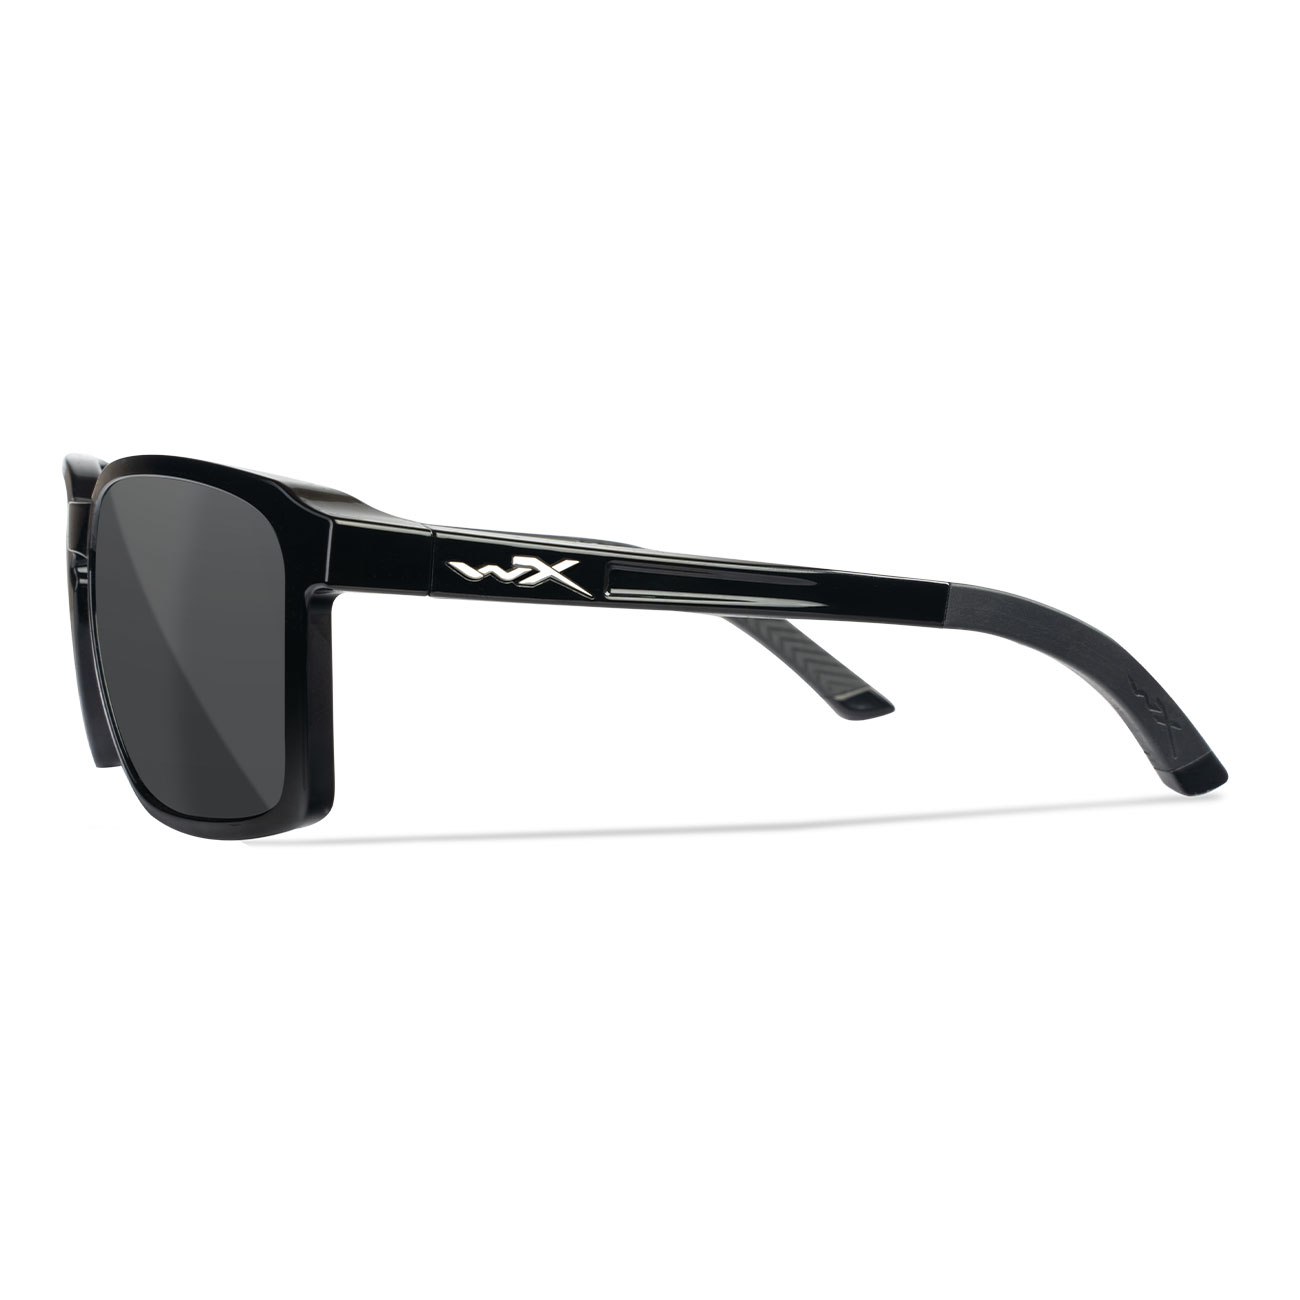 Wiley X Sonnenbrille Alfa Captivate schwarz glnzend Glser grau polarisiert inkl. Brillenetui und Seitenschutz Bild 2